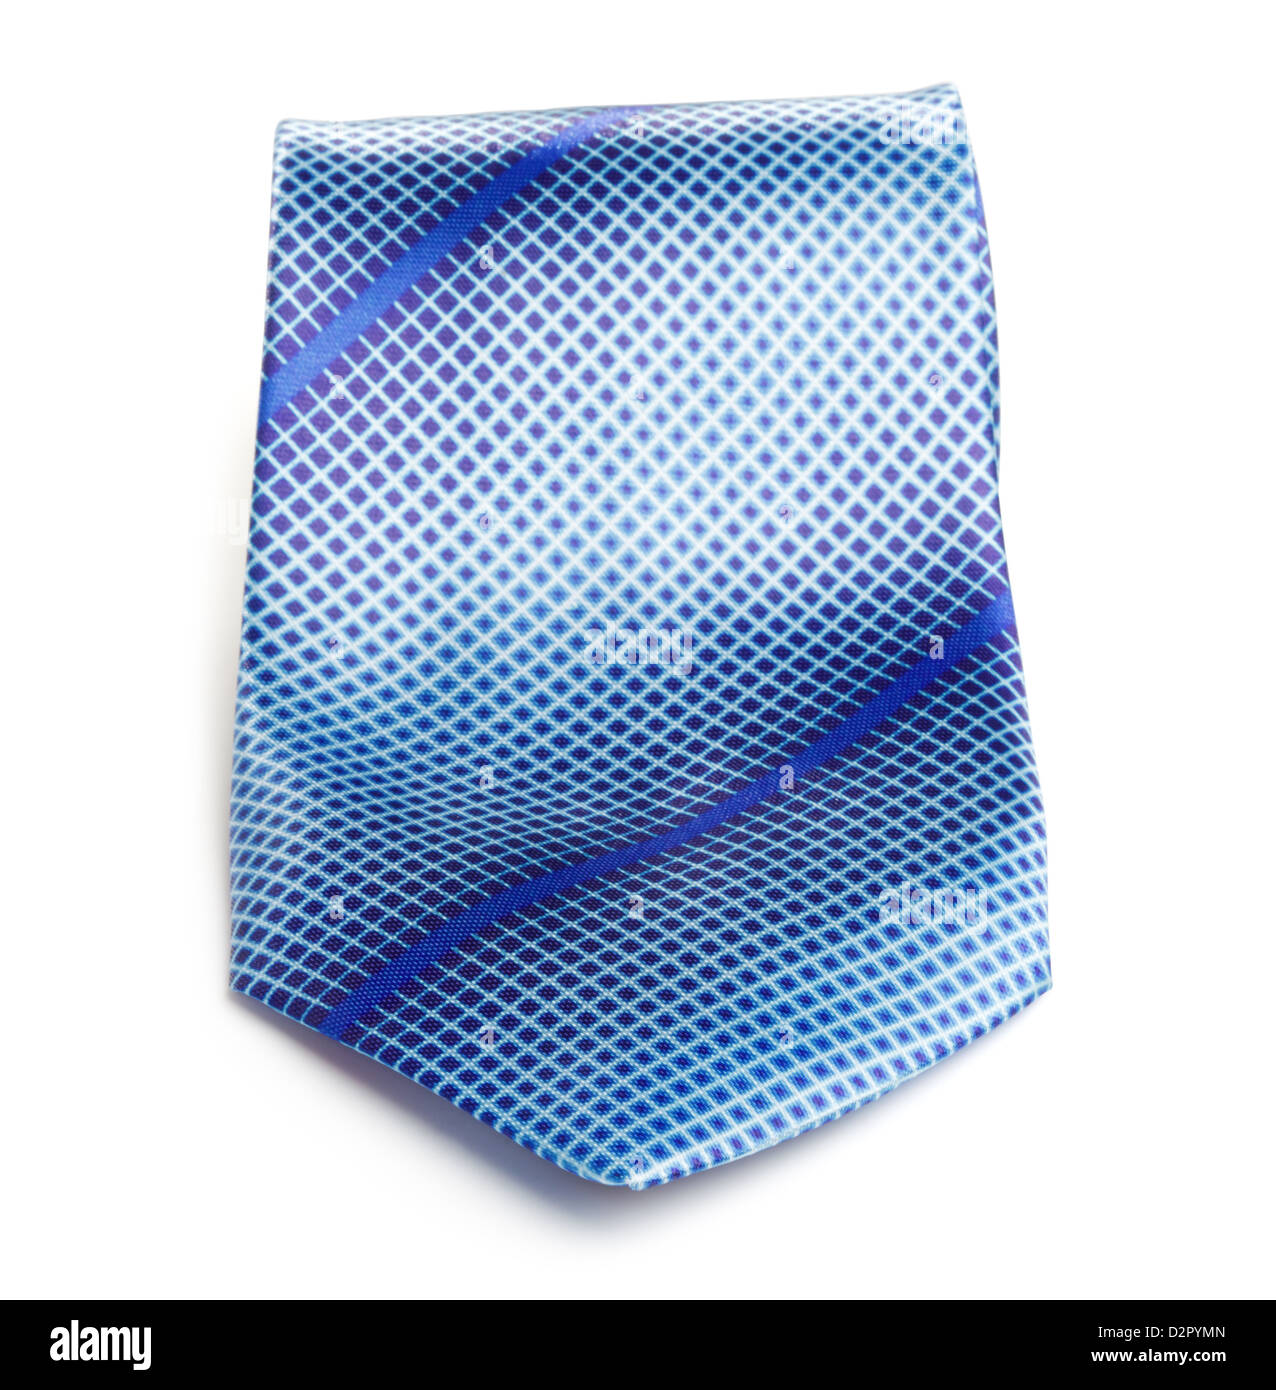 elegant blue tie isolated on white background Stock Photo